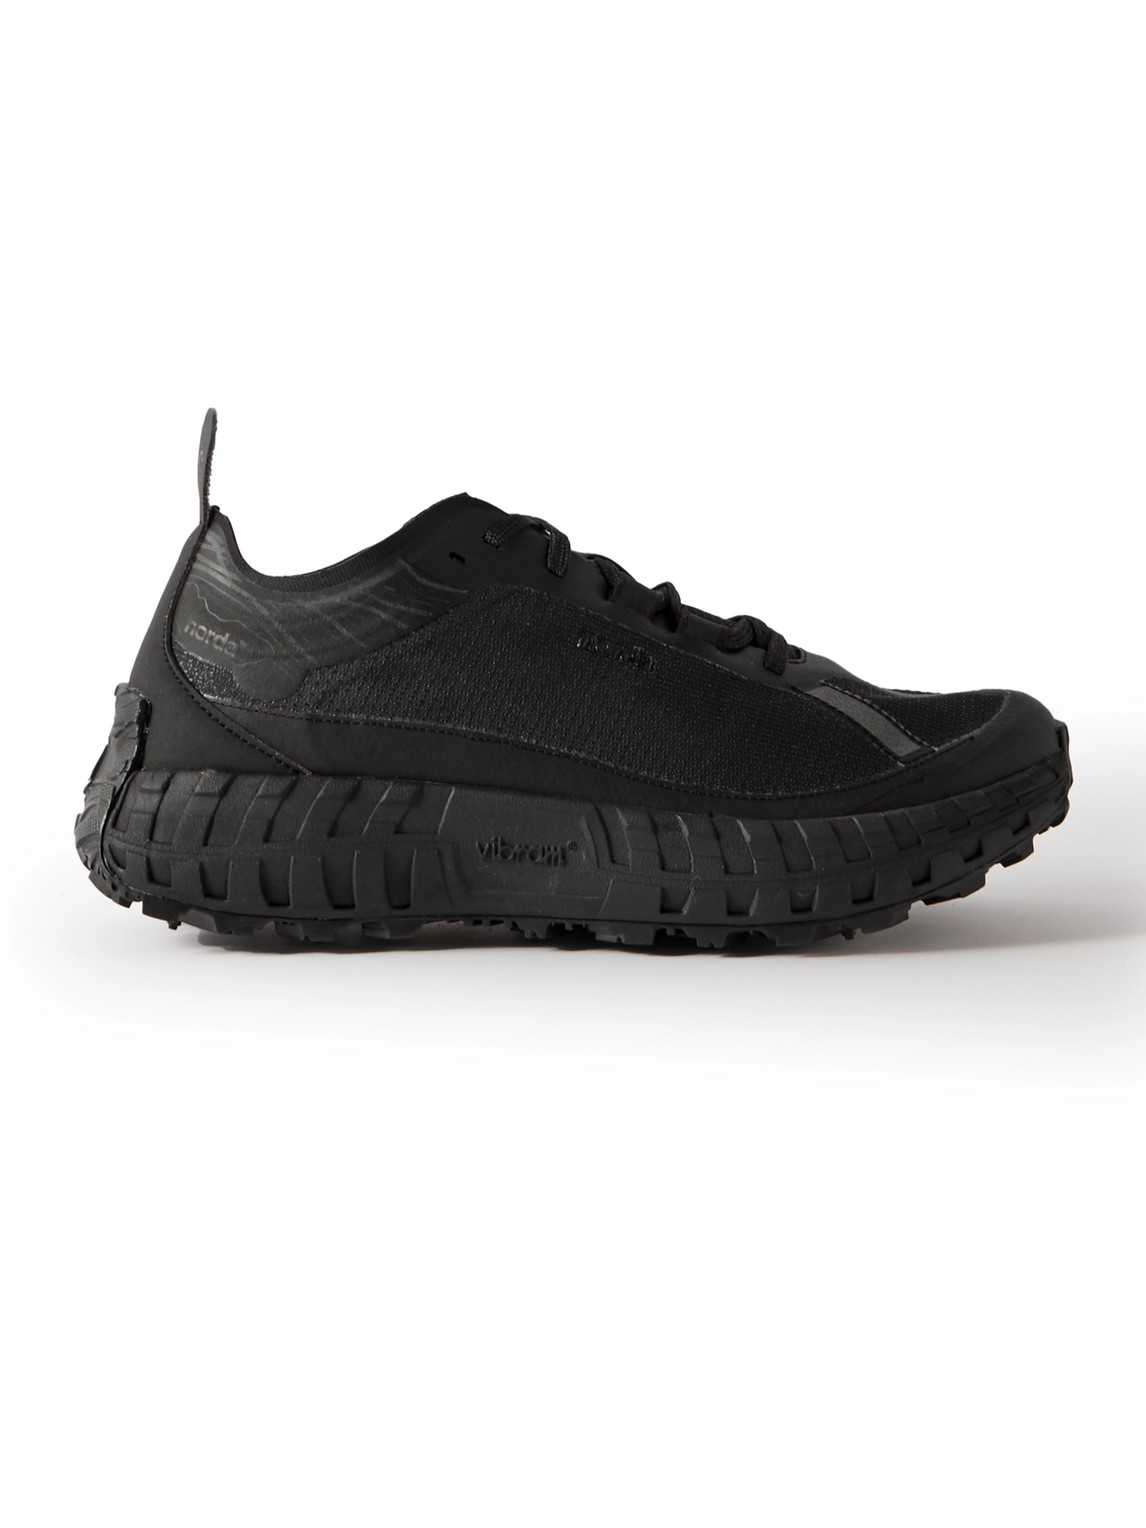 Norda 001 Mesh Running Sneakers In Black